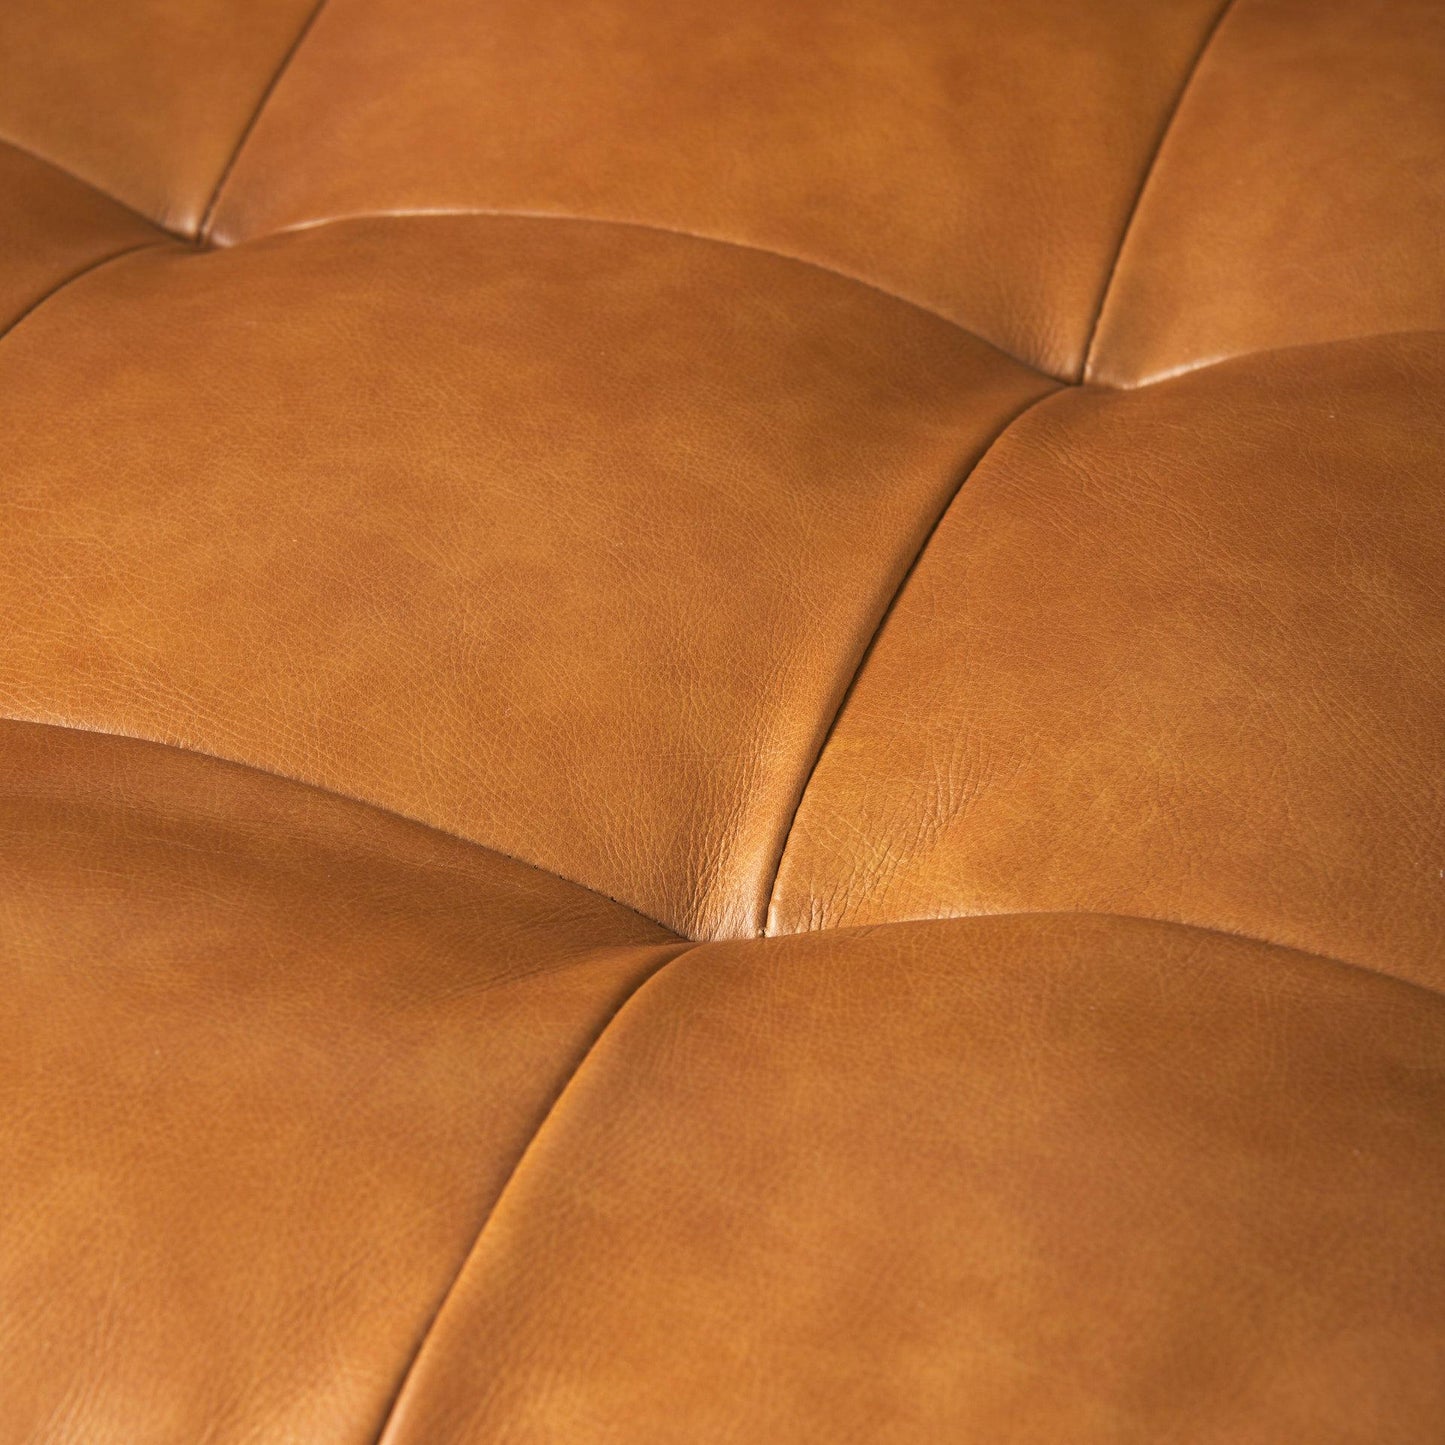 Svend 88.0L x 38.0W x 34.0H Tan Leather Sofa